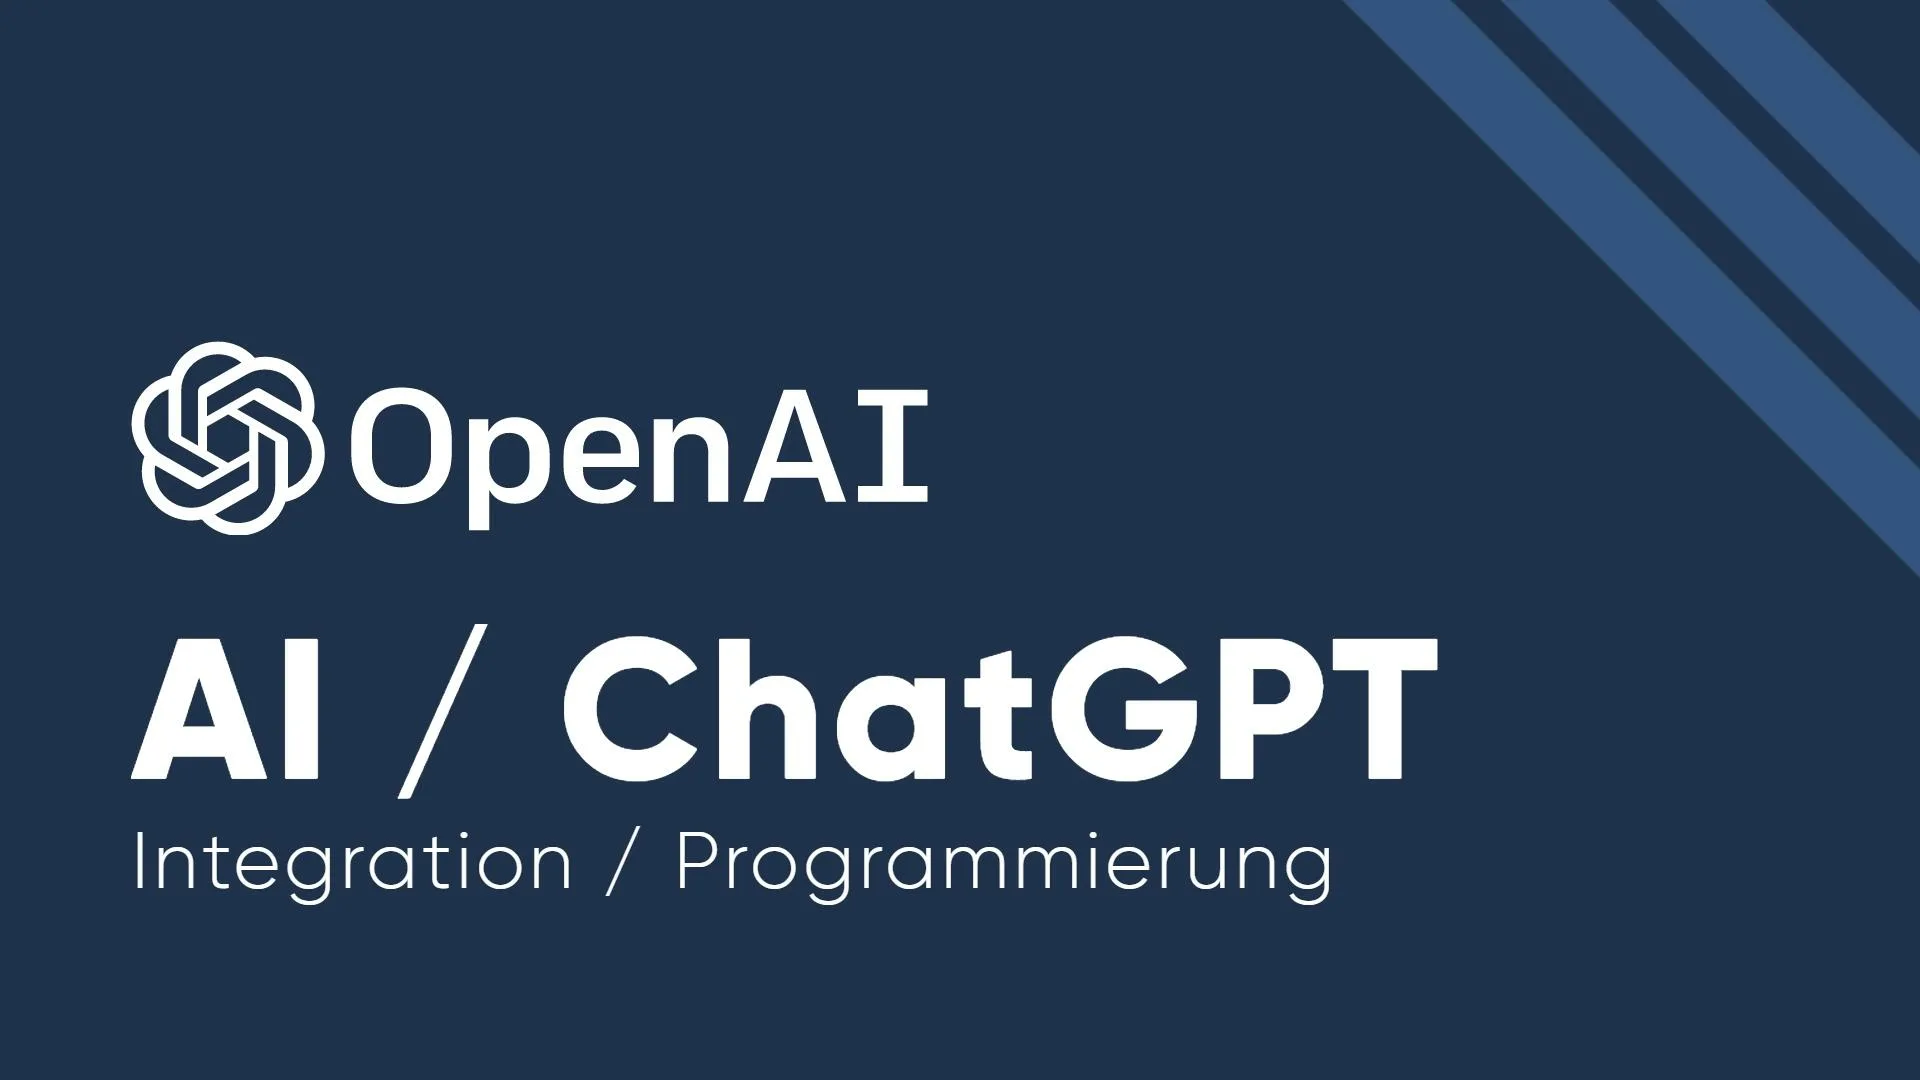 AI / OpenAI / ChatGPT